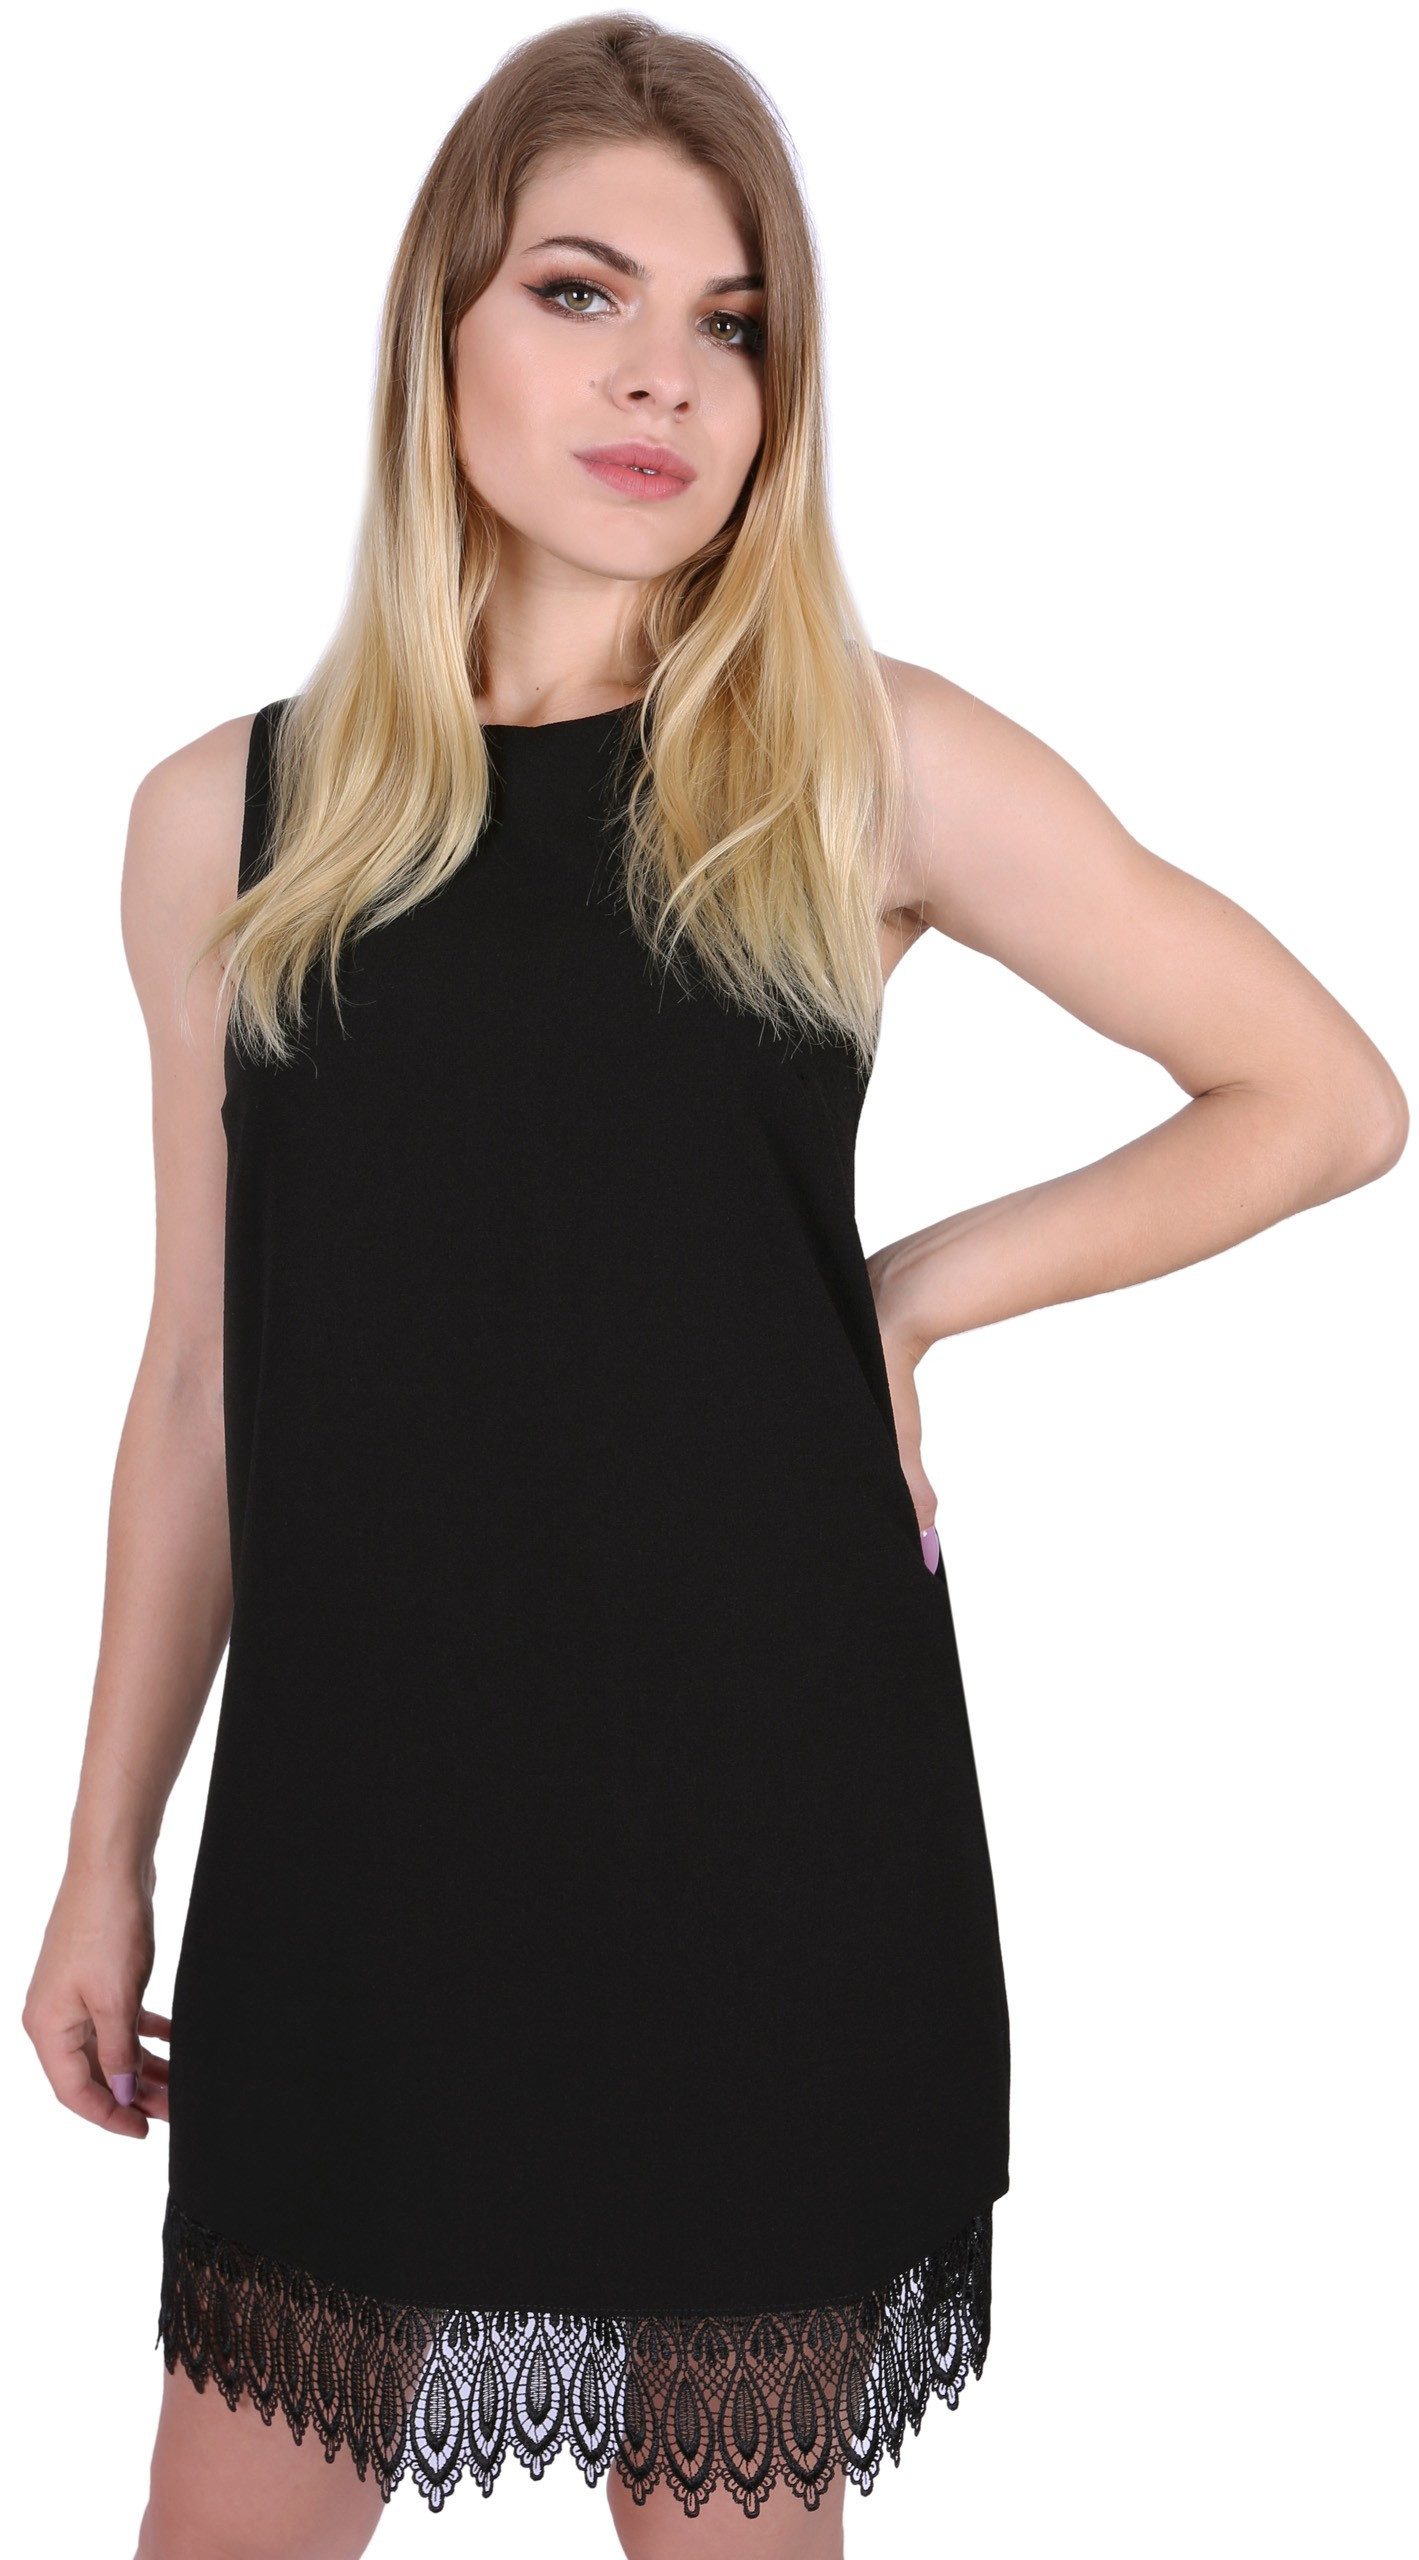 Sarcia.eu Minikleid Schwarzes Minikleid mit Details aus Spitze Sommerkleid elegant M